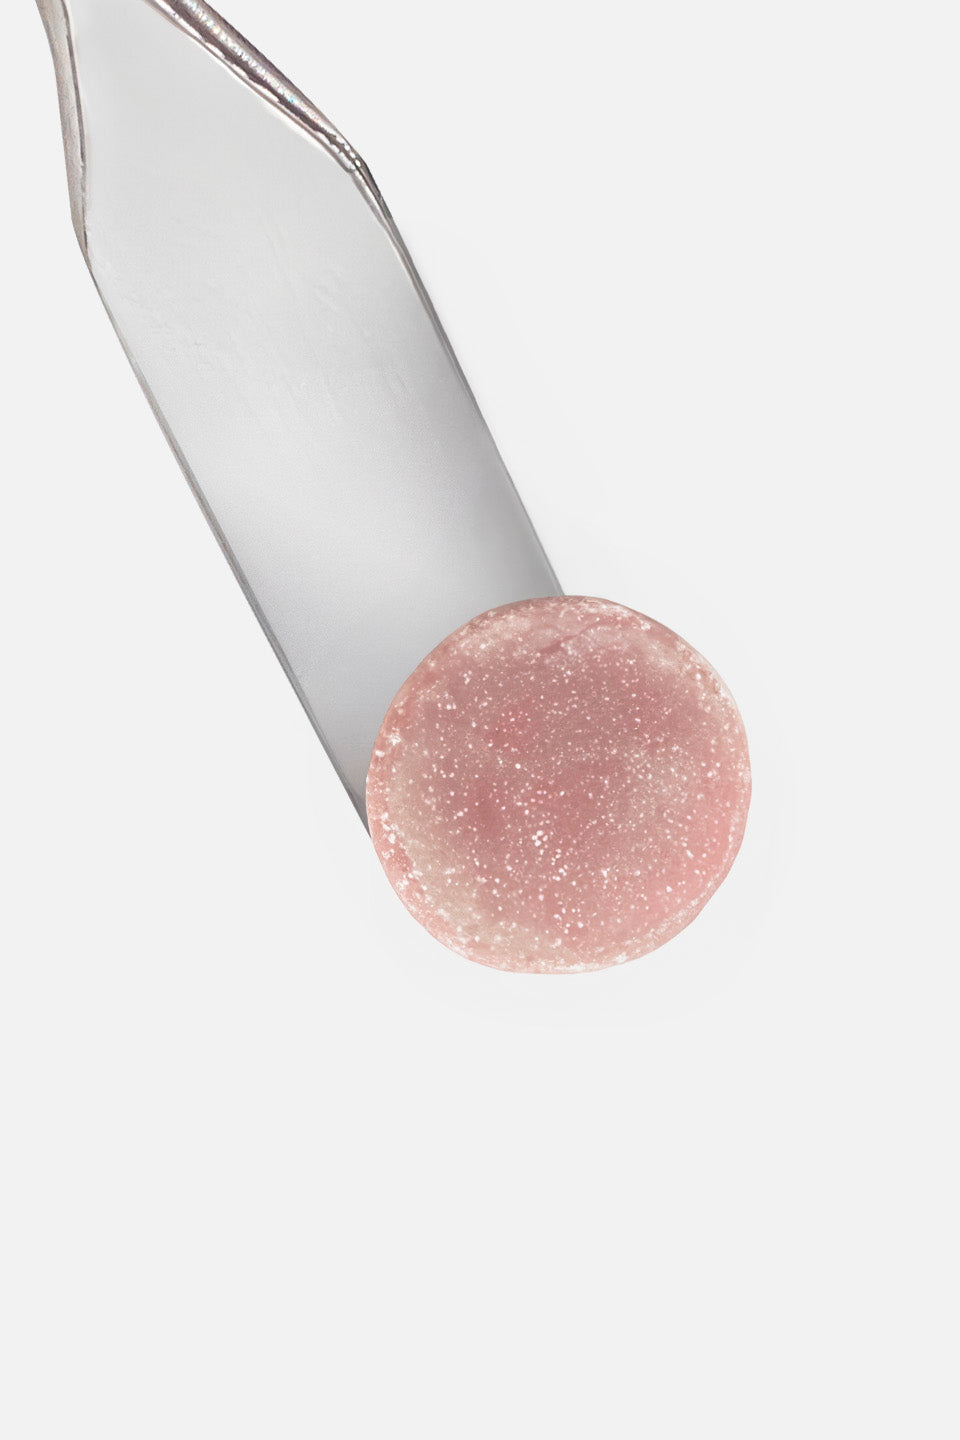 Acrygel per ricostruzione rosa scuro glitter Doubly 50 ml